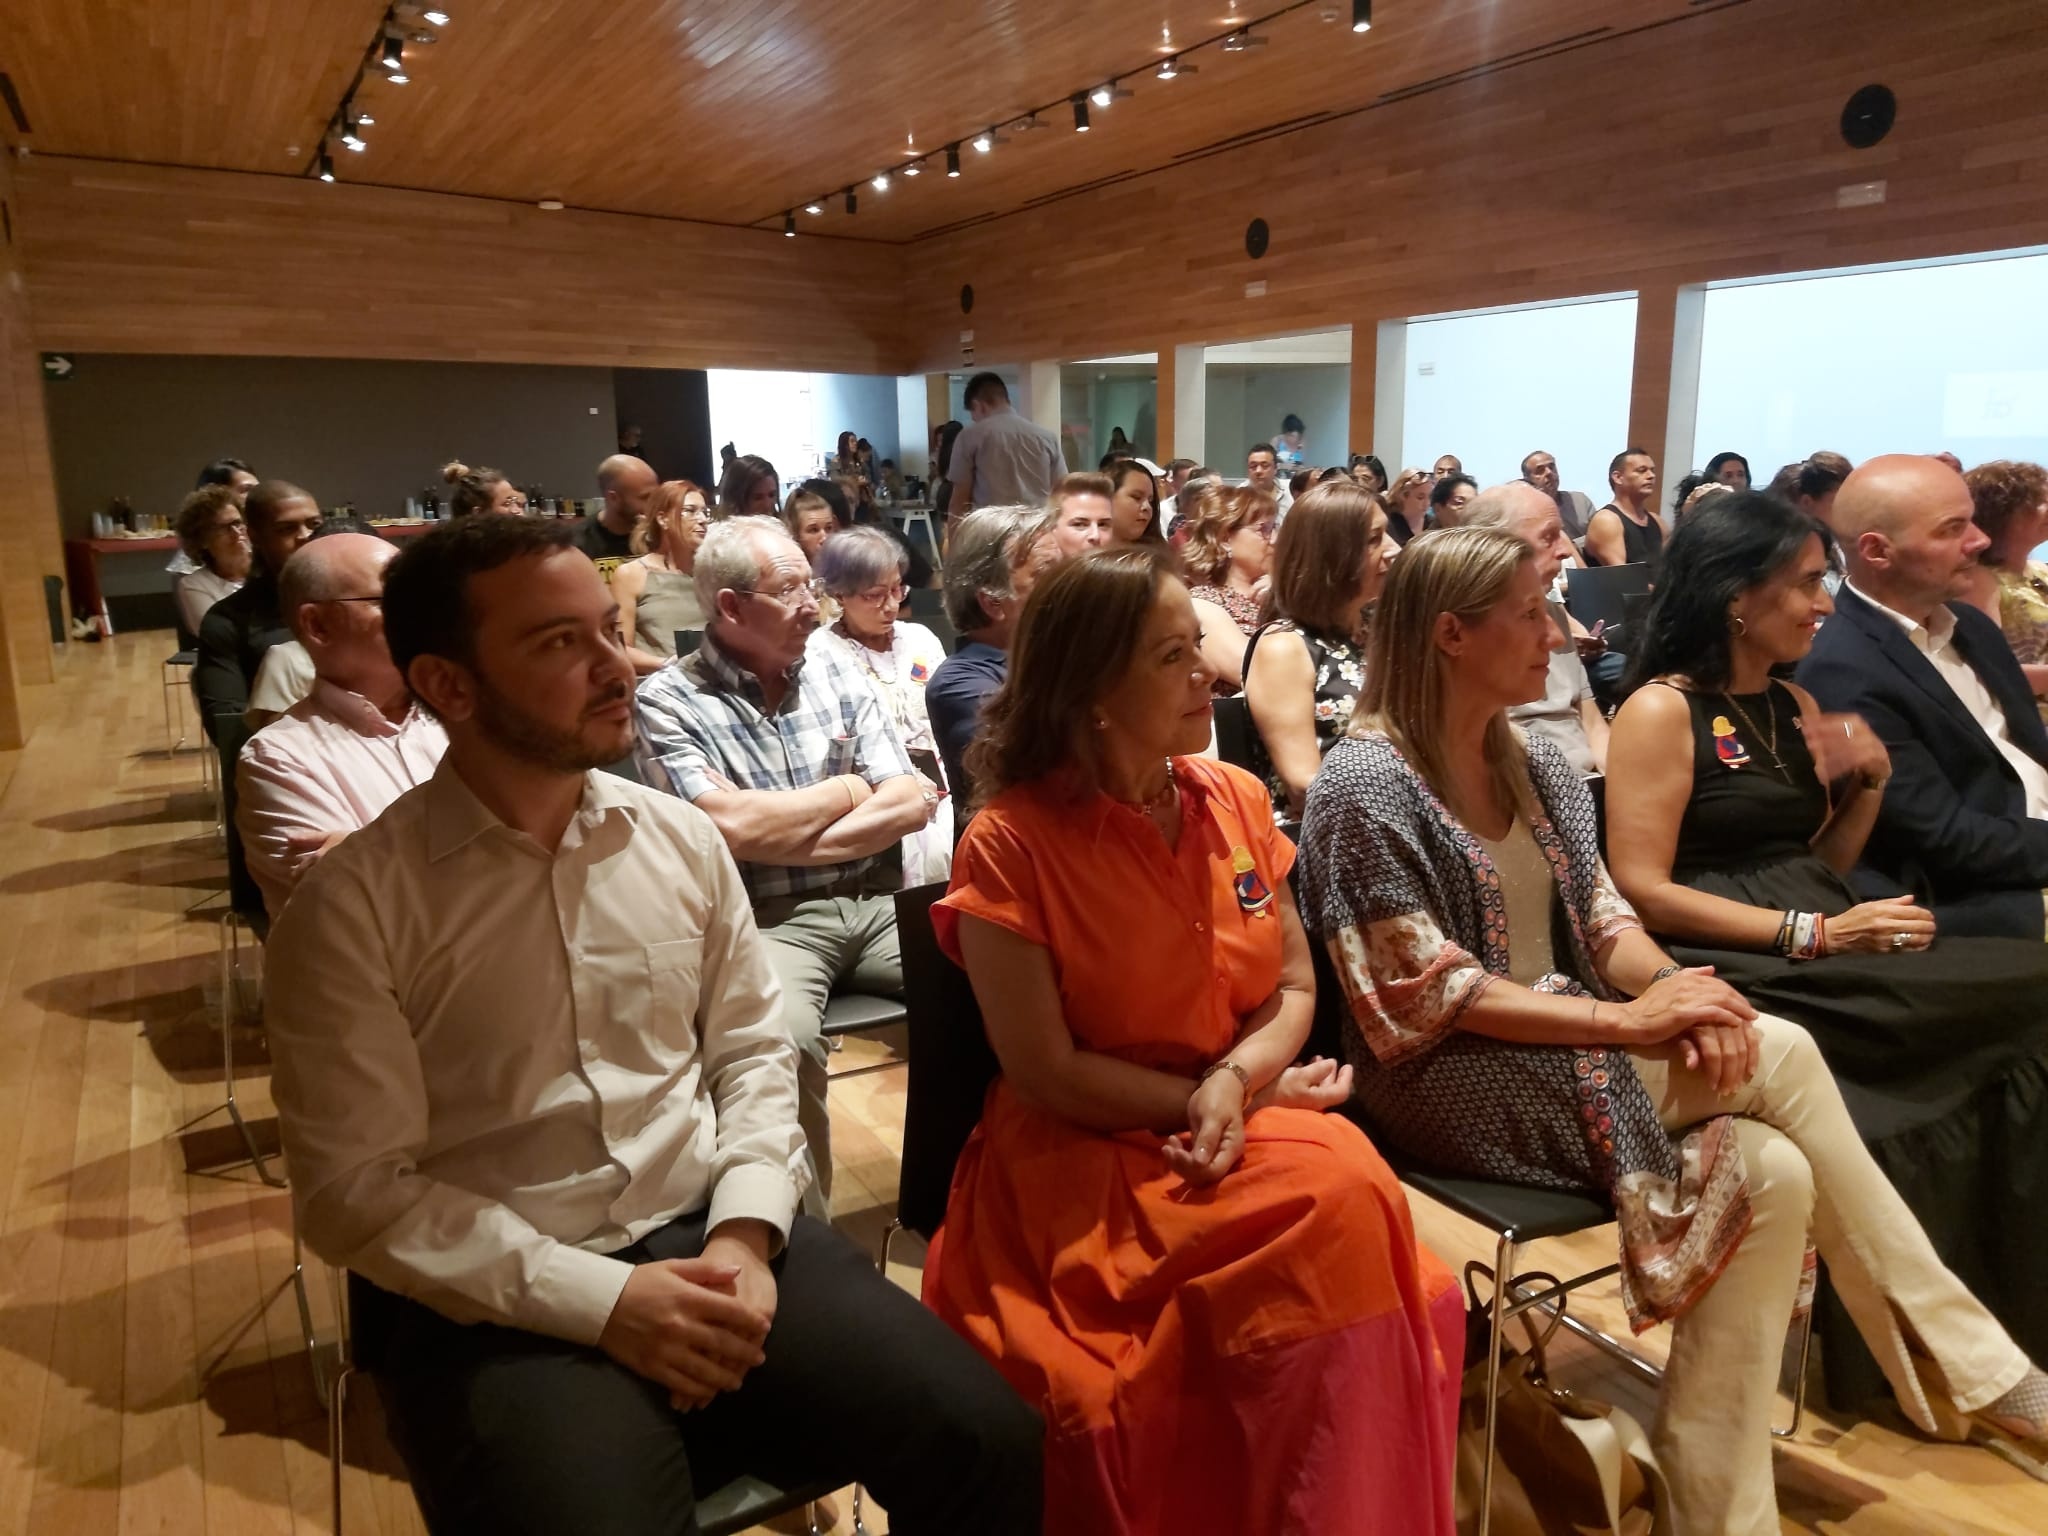 Consulado en Bilbao recibió reconocimiento en la gala de aniversario de la Asociación Colombiana de La Rioja “Asocolor”